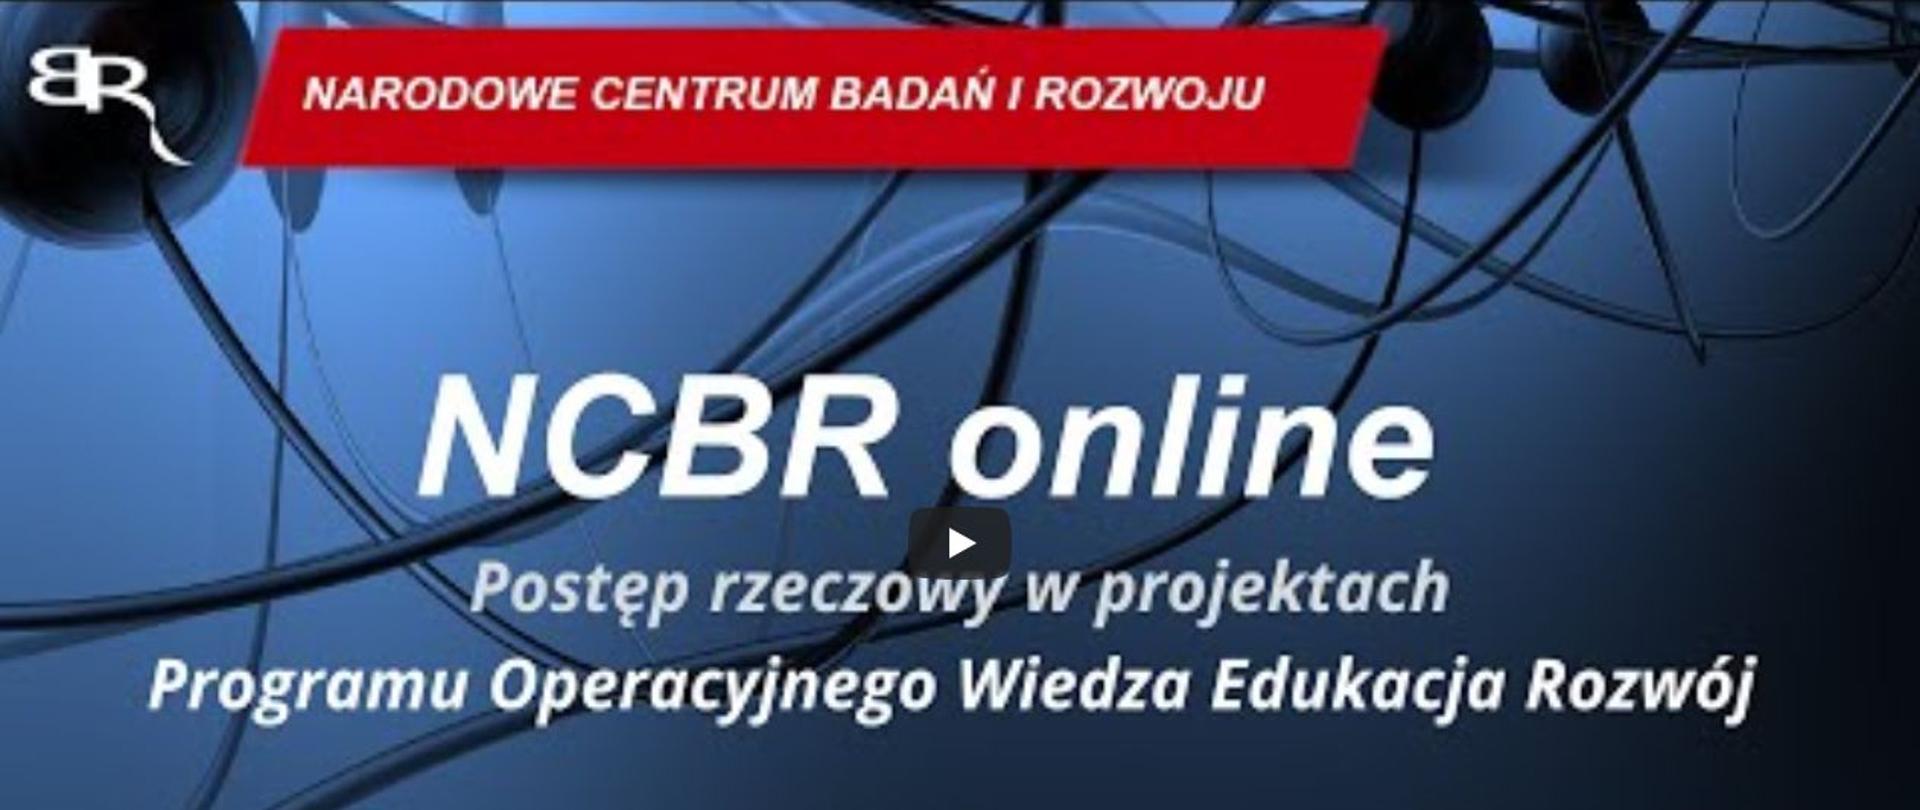 NCBR online: Postęp rzeczowy w projektach PO WER